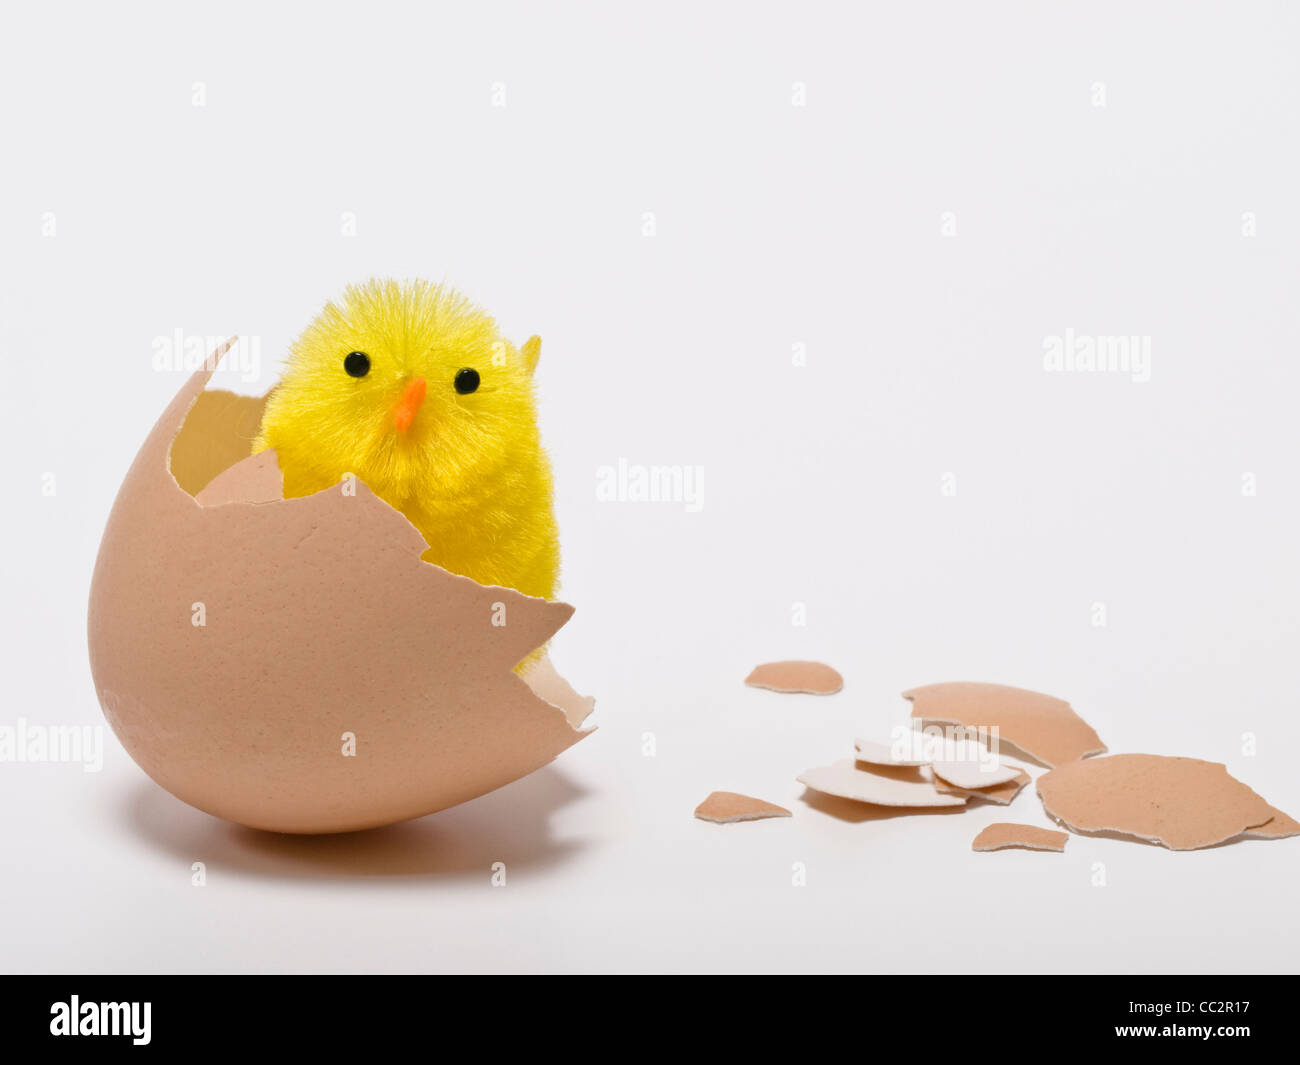 Un polluelo (toy) se encuentra en una cáscara de huevo rota Foto de stock